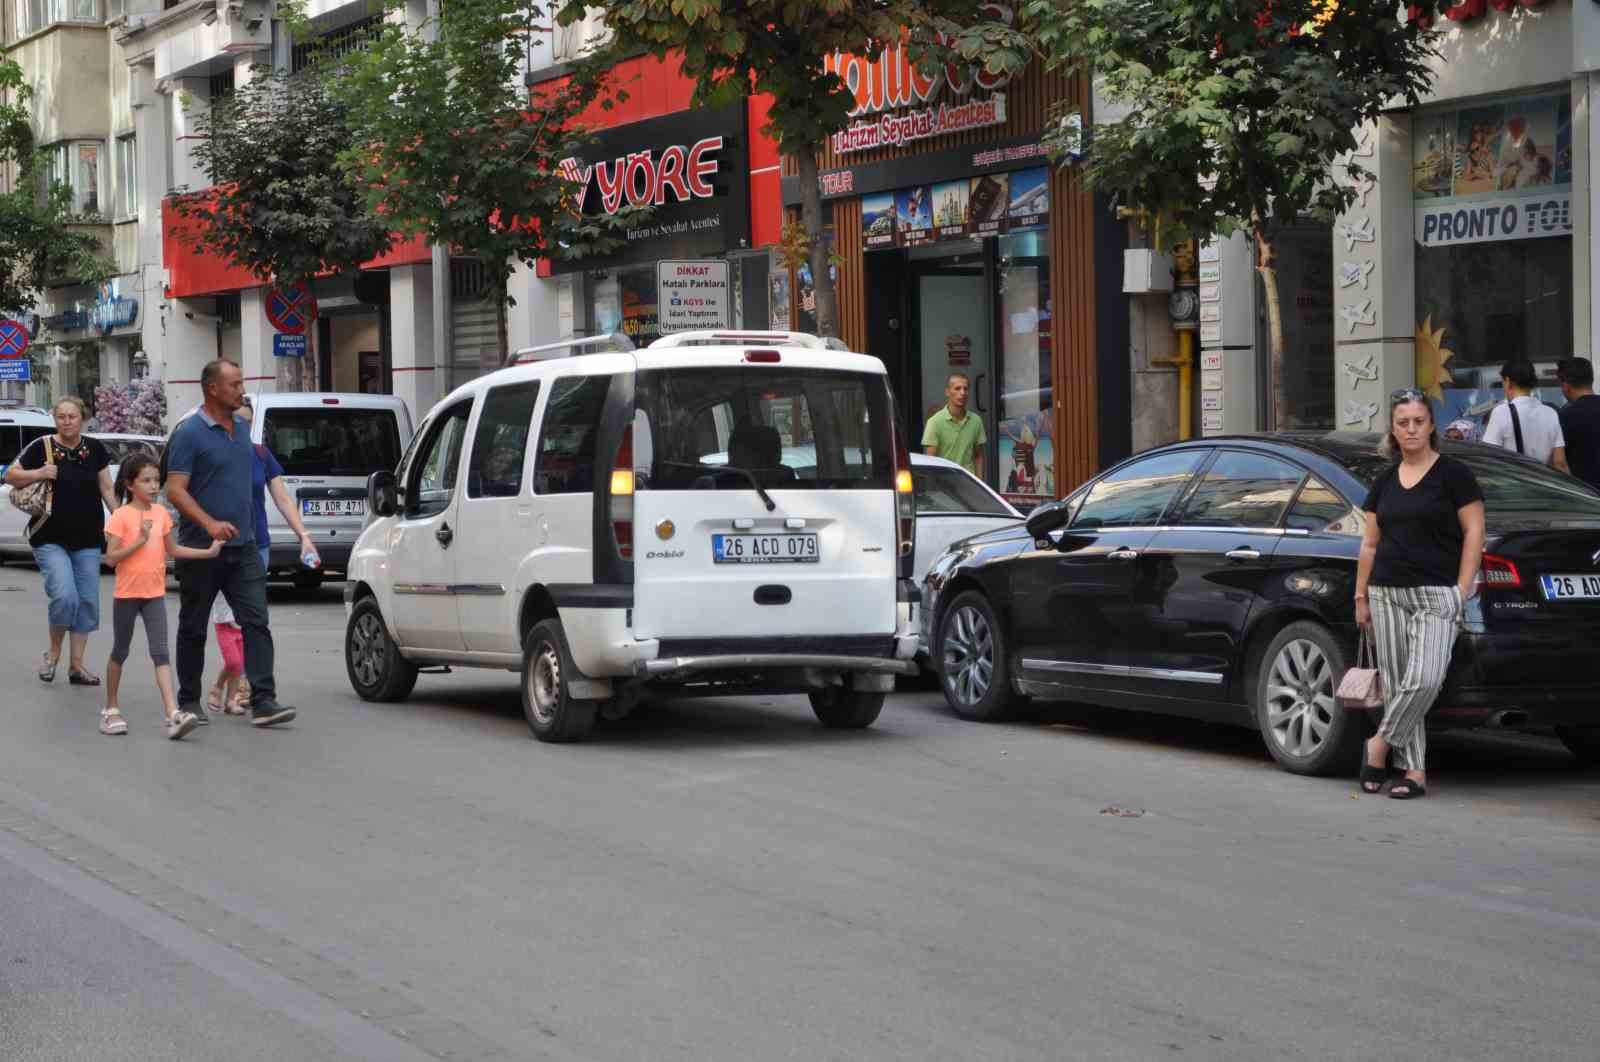 (ÖZEL) Vatandaşlar Eskişehir’deki trafik sorununa çözüm bulunmasını bekliyor